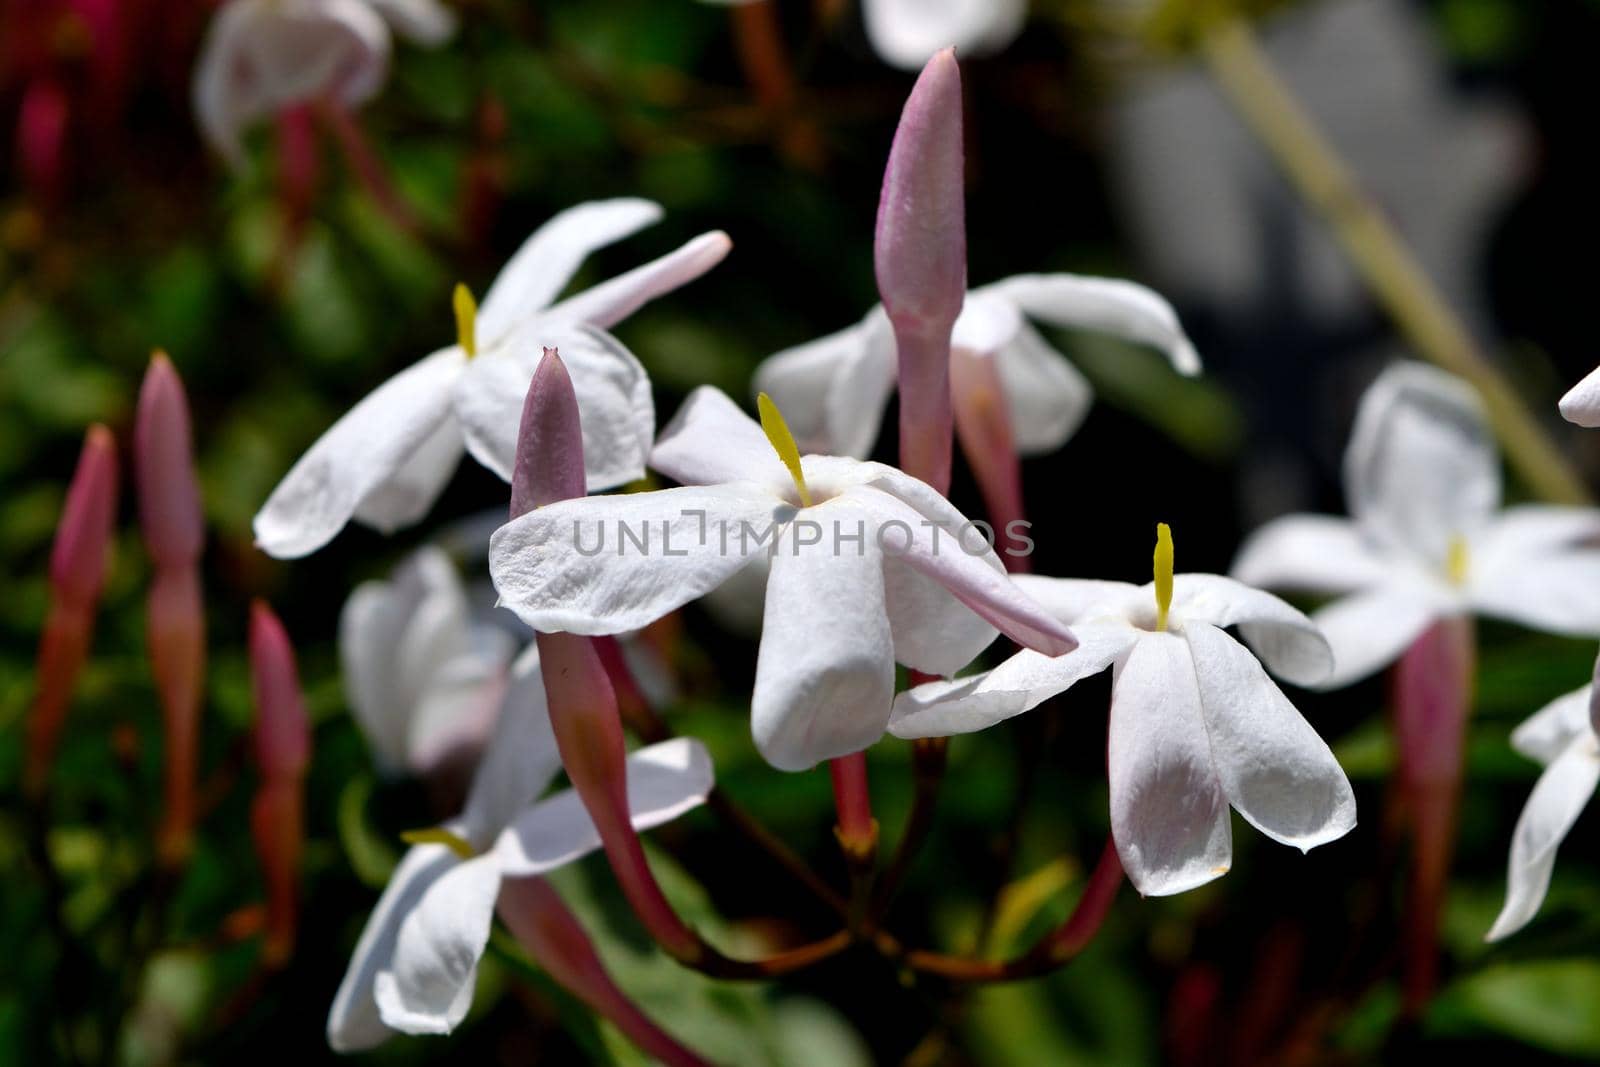 A closeup of beautiful freshly blooming jasmine flowers